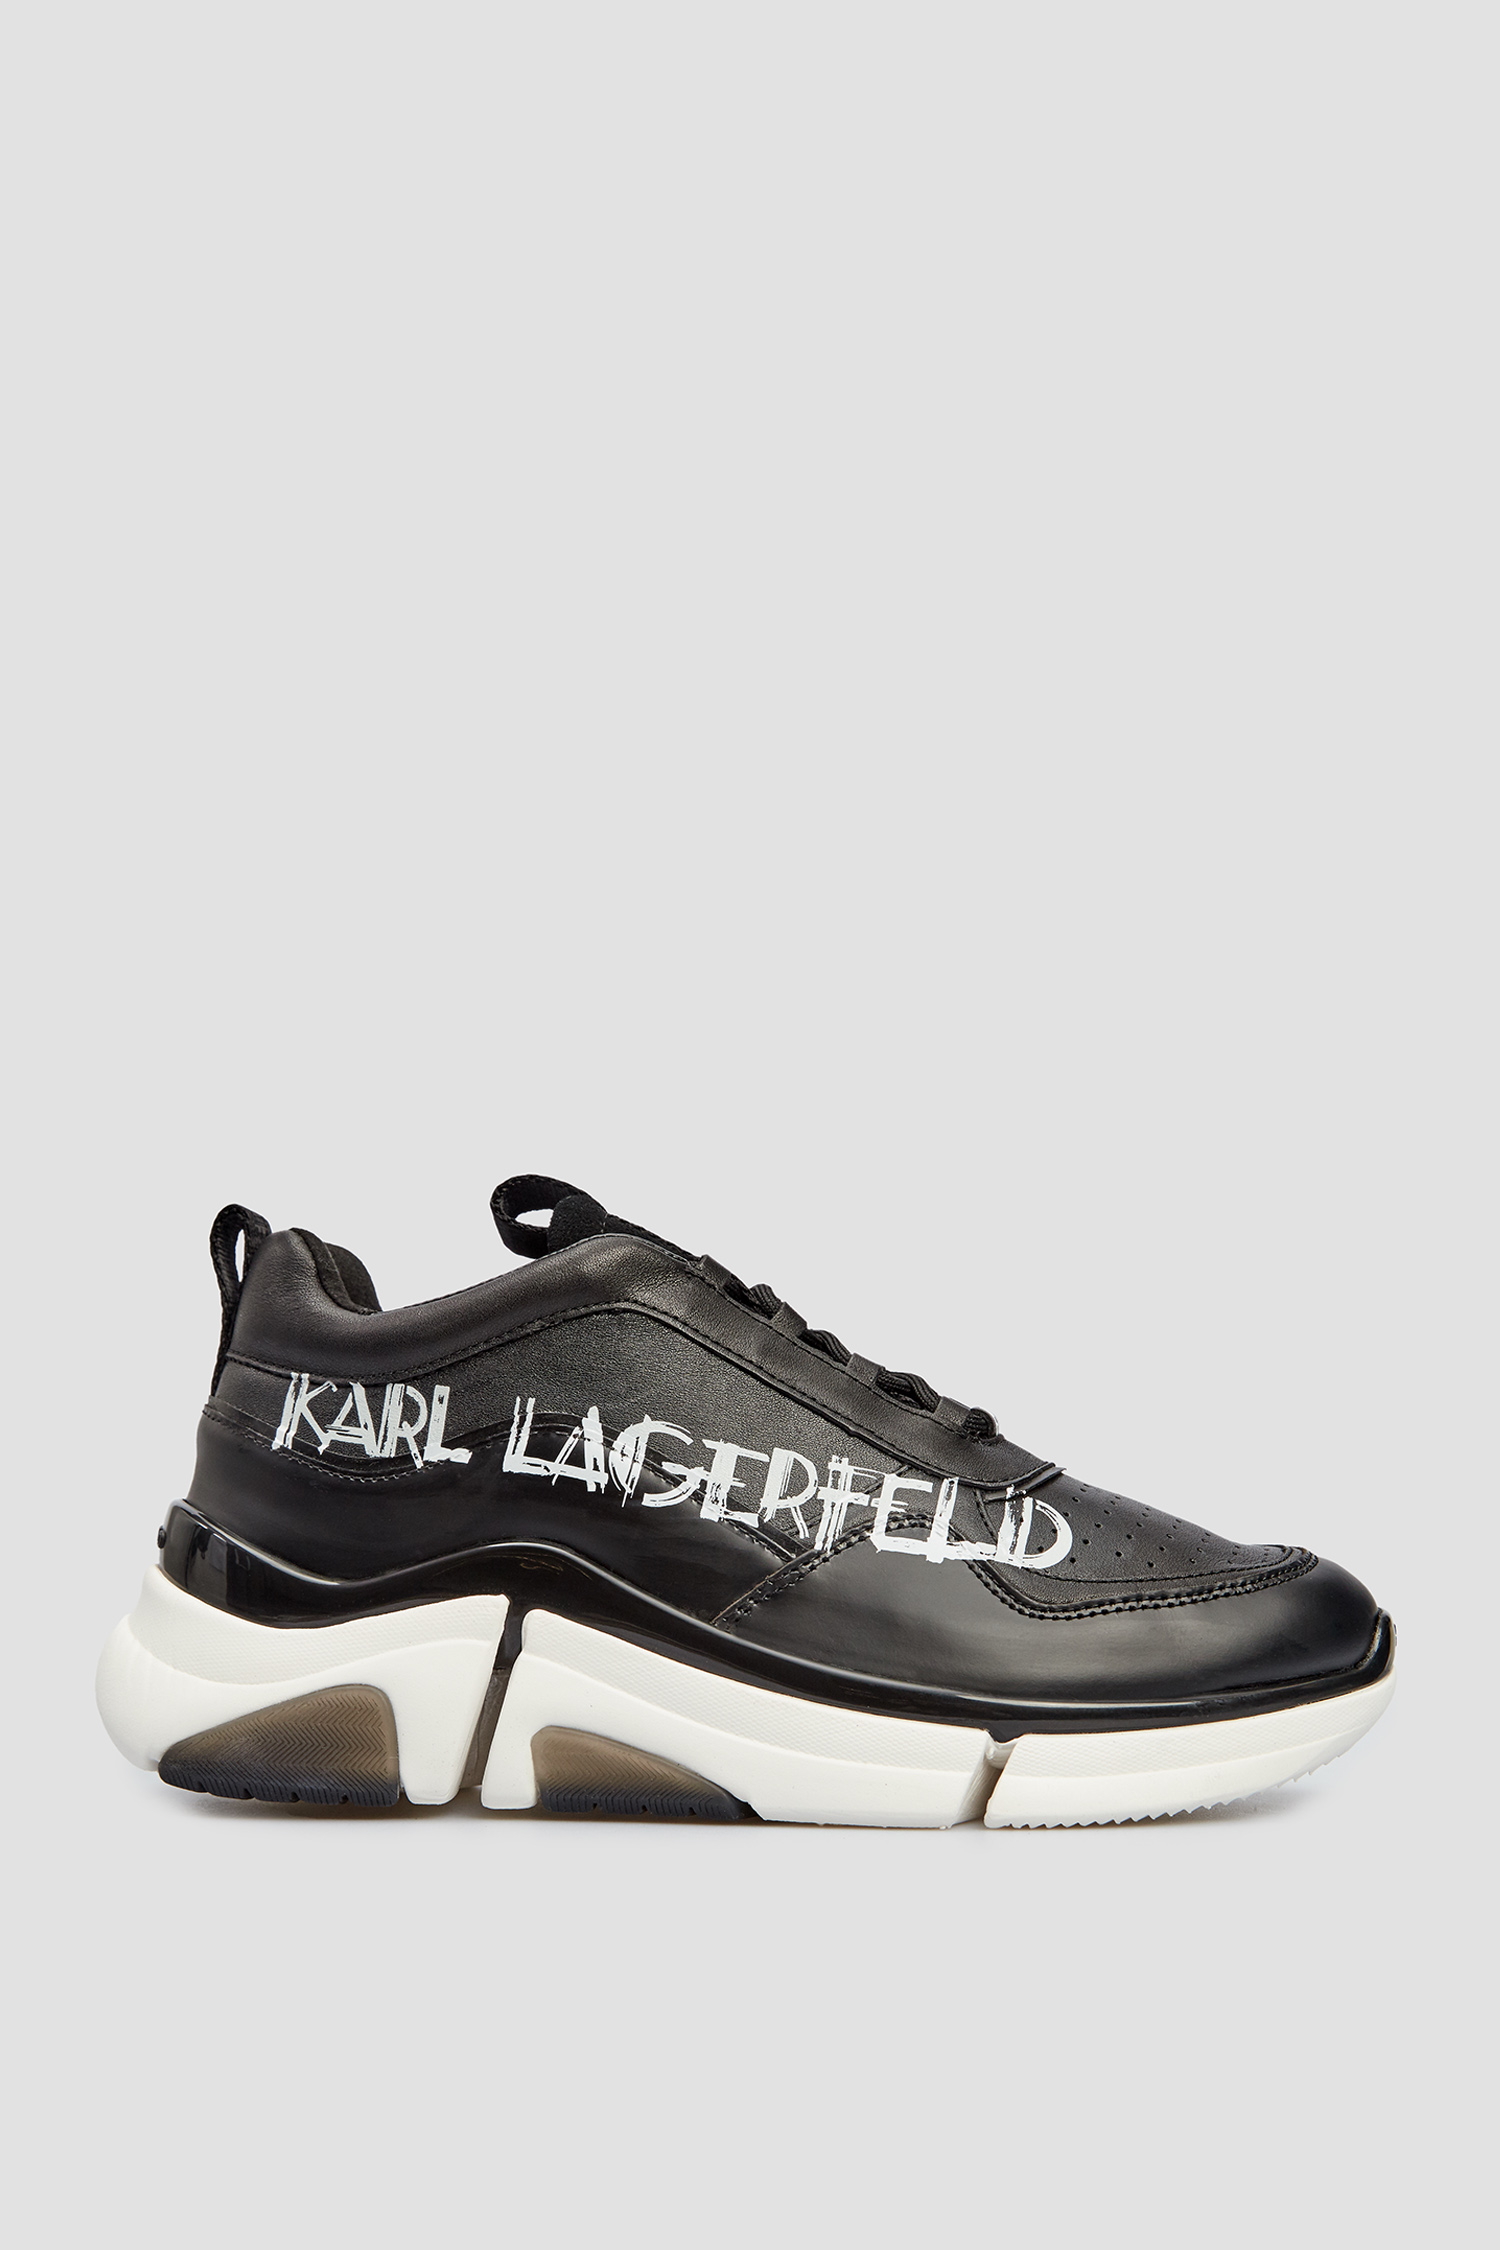 Чорні шкіряні кросівки для хлопців Karl Lagerfeld 512473.855019;990